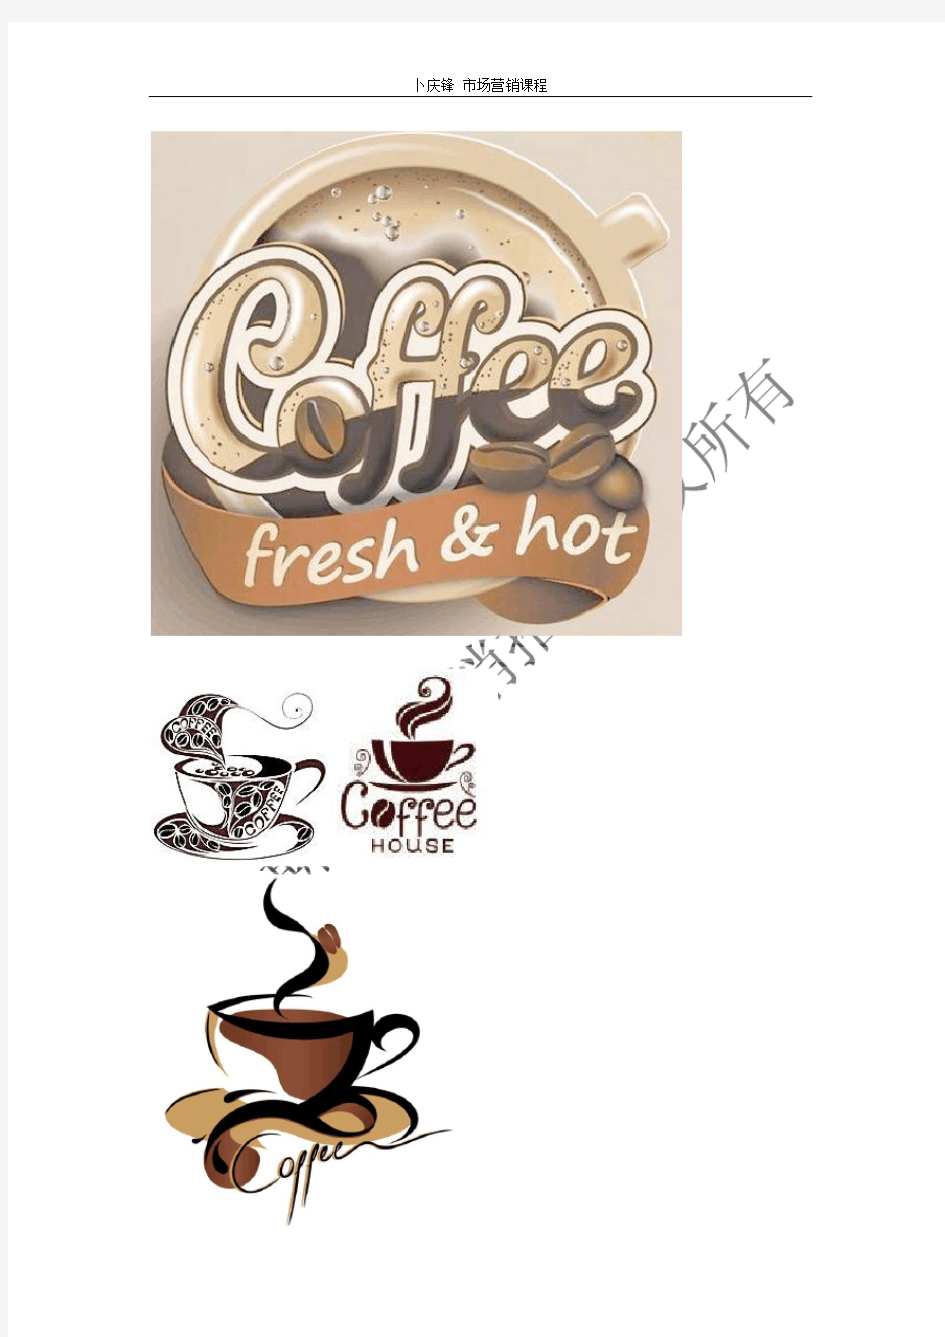 咖啡Logo设计大全